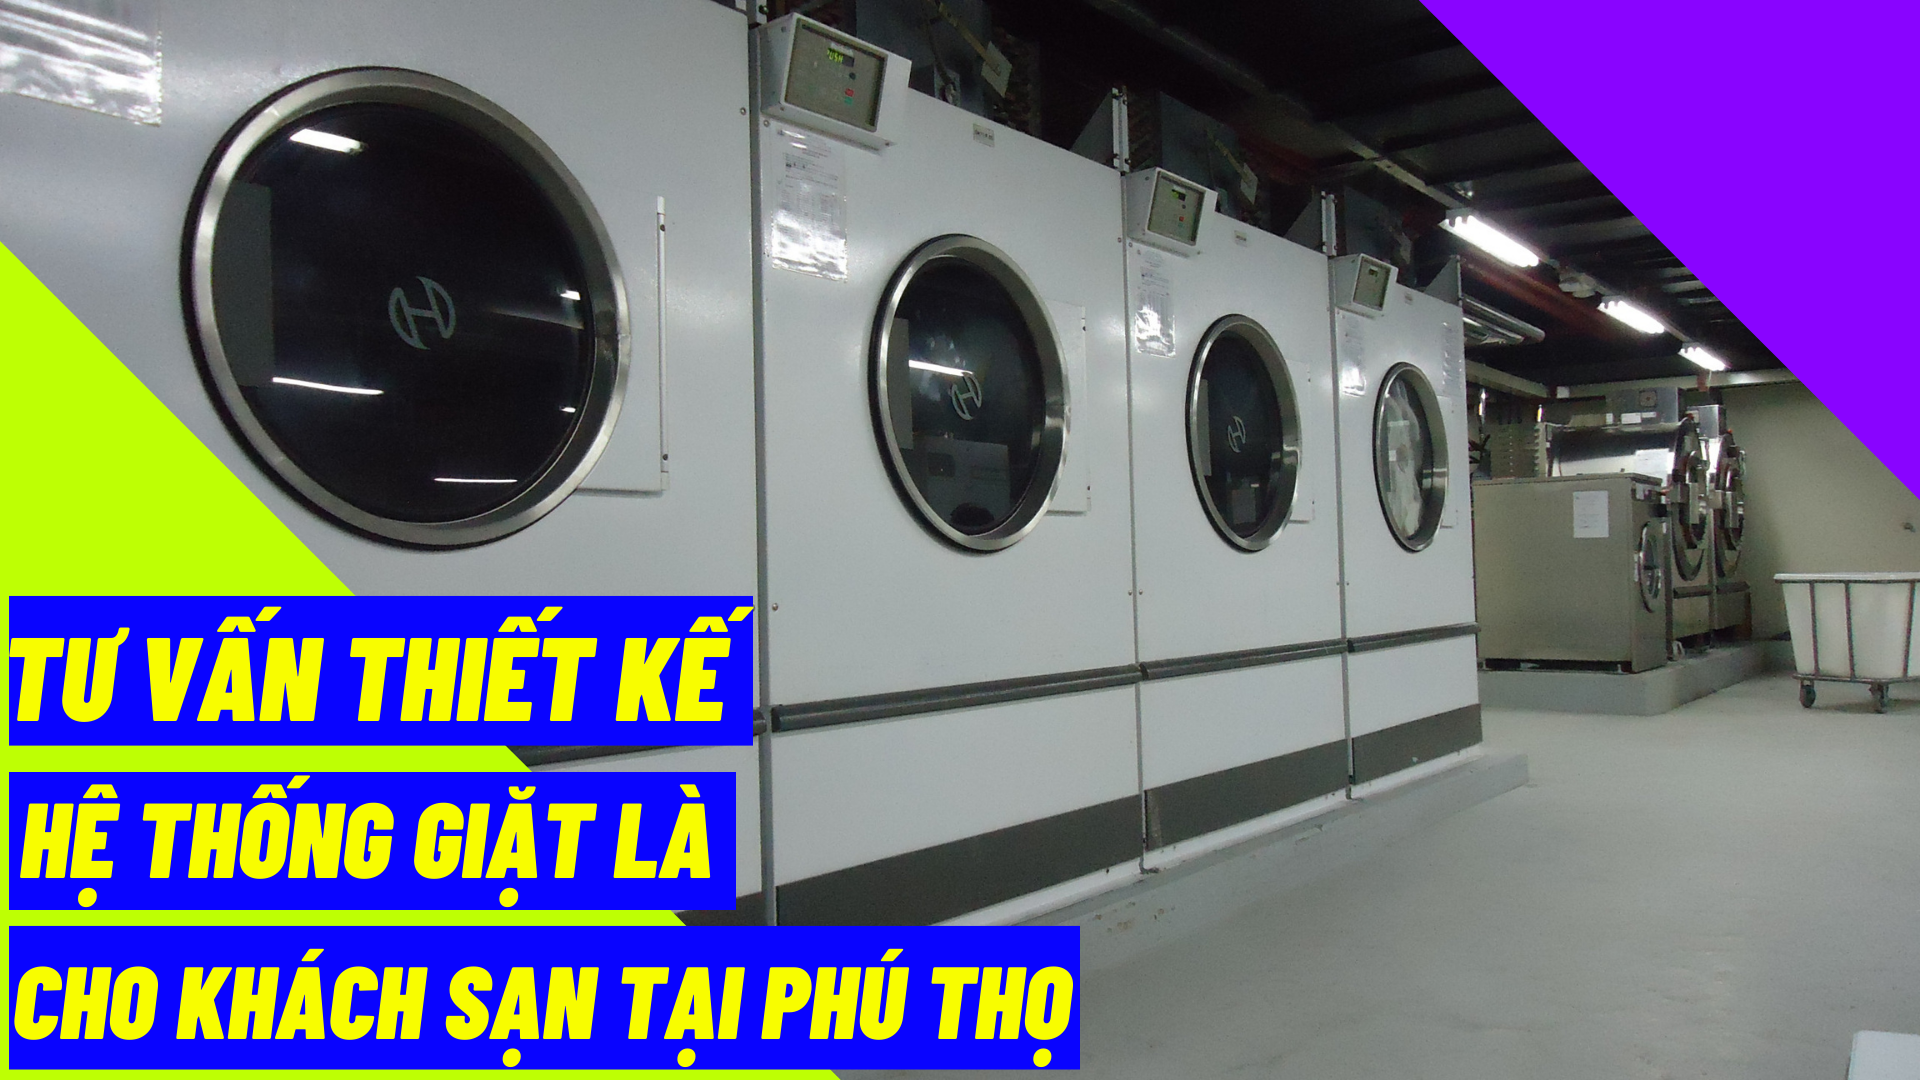 Tư vấn thiết kế hệ thống giặt là cho khách sạn tại Phú Thọ